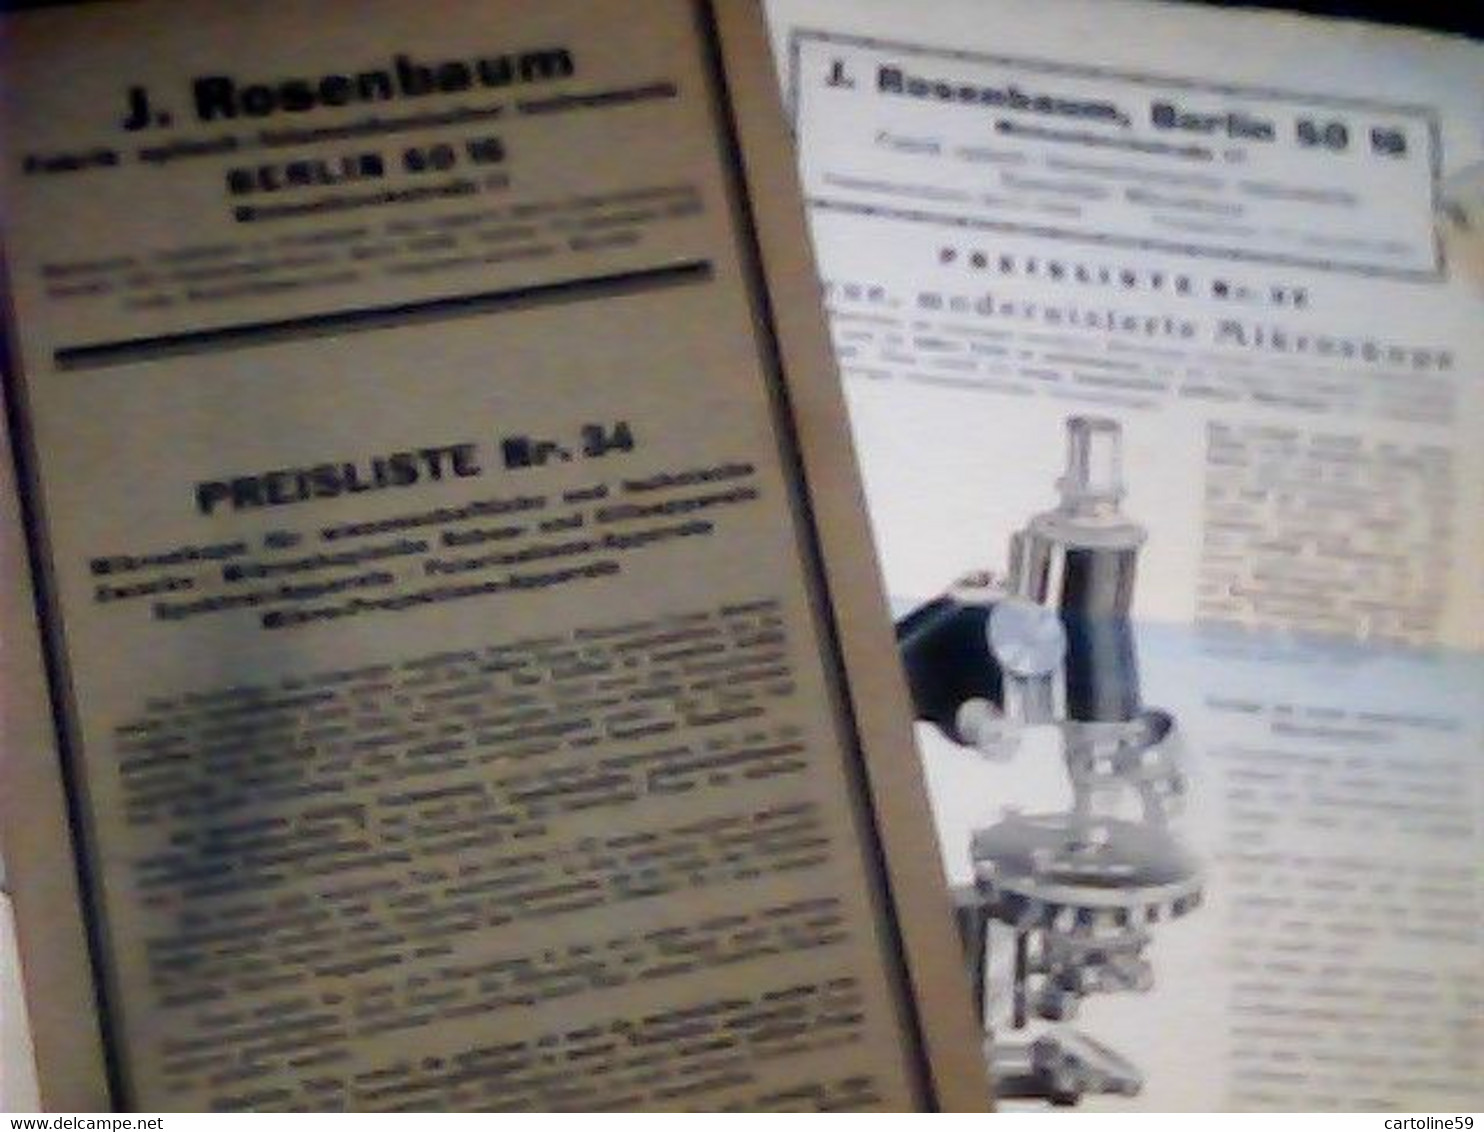 LIBRETTO MICROSCOPIO ROSENBAUM BERLIN FABRIK OPTISCH MIKROSKOP PREISLISTELETTER 1932 IQ8312 - Catalogues